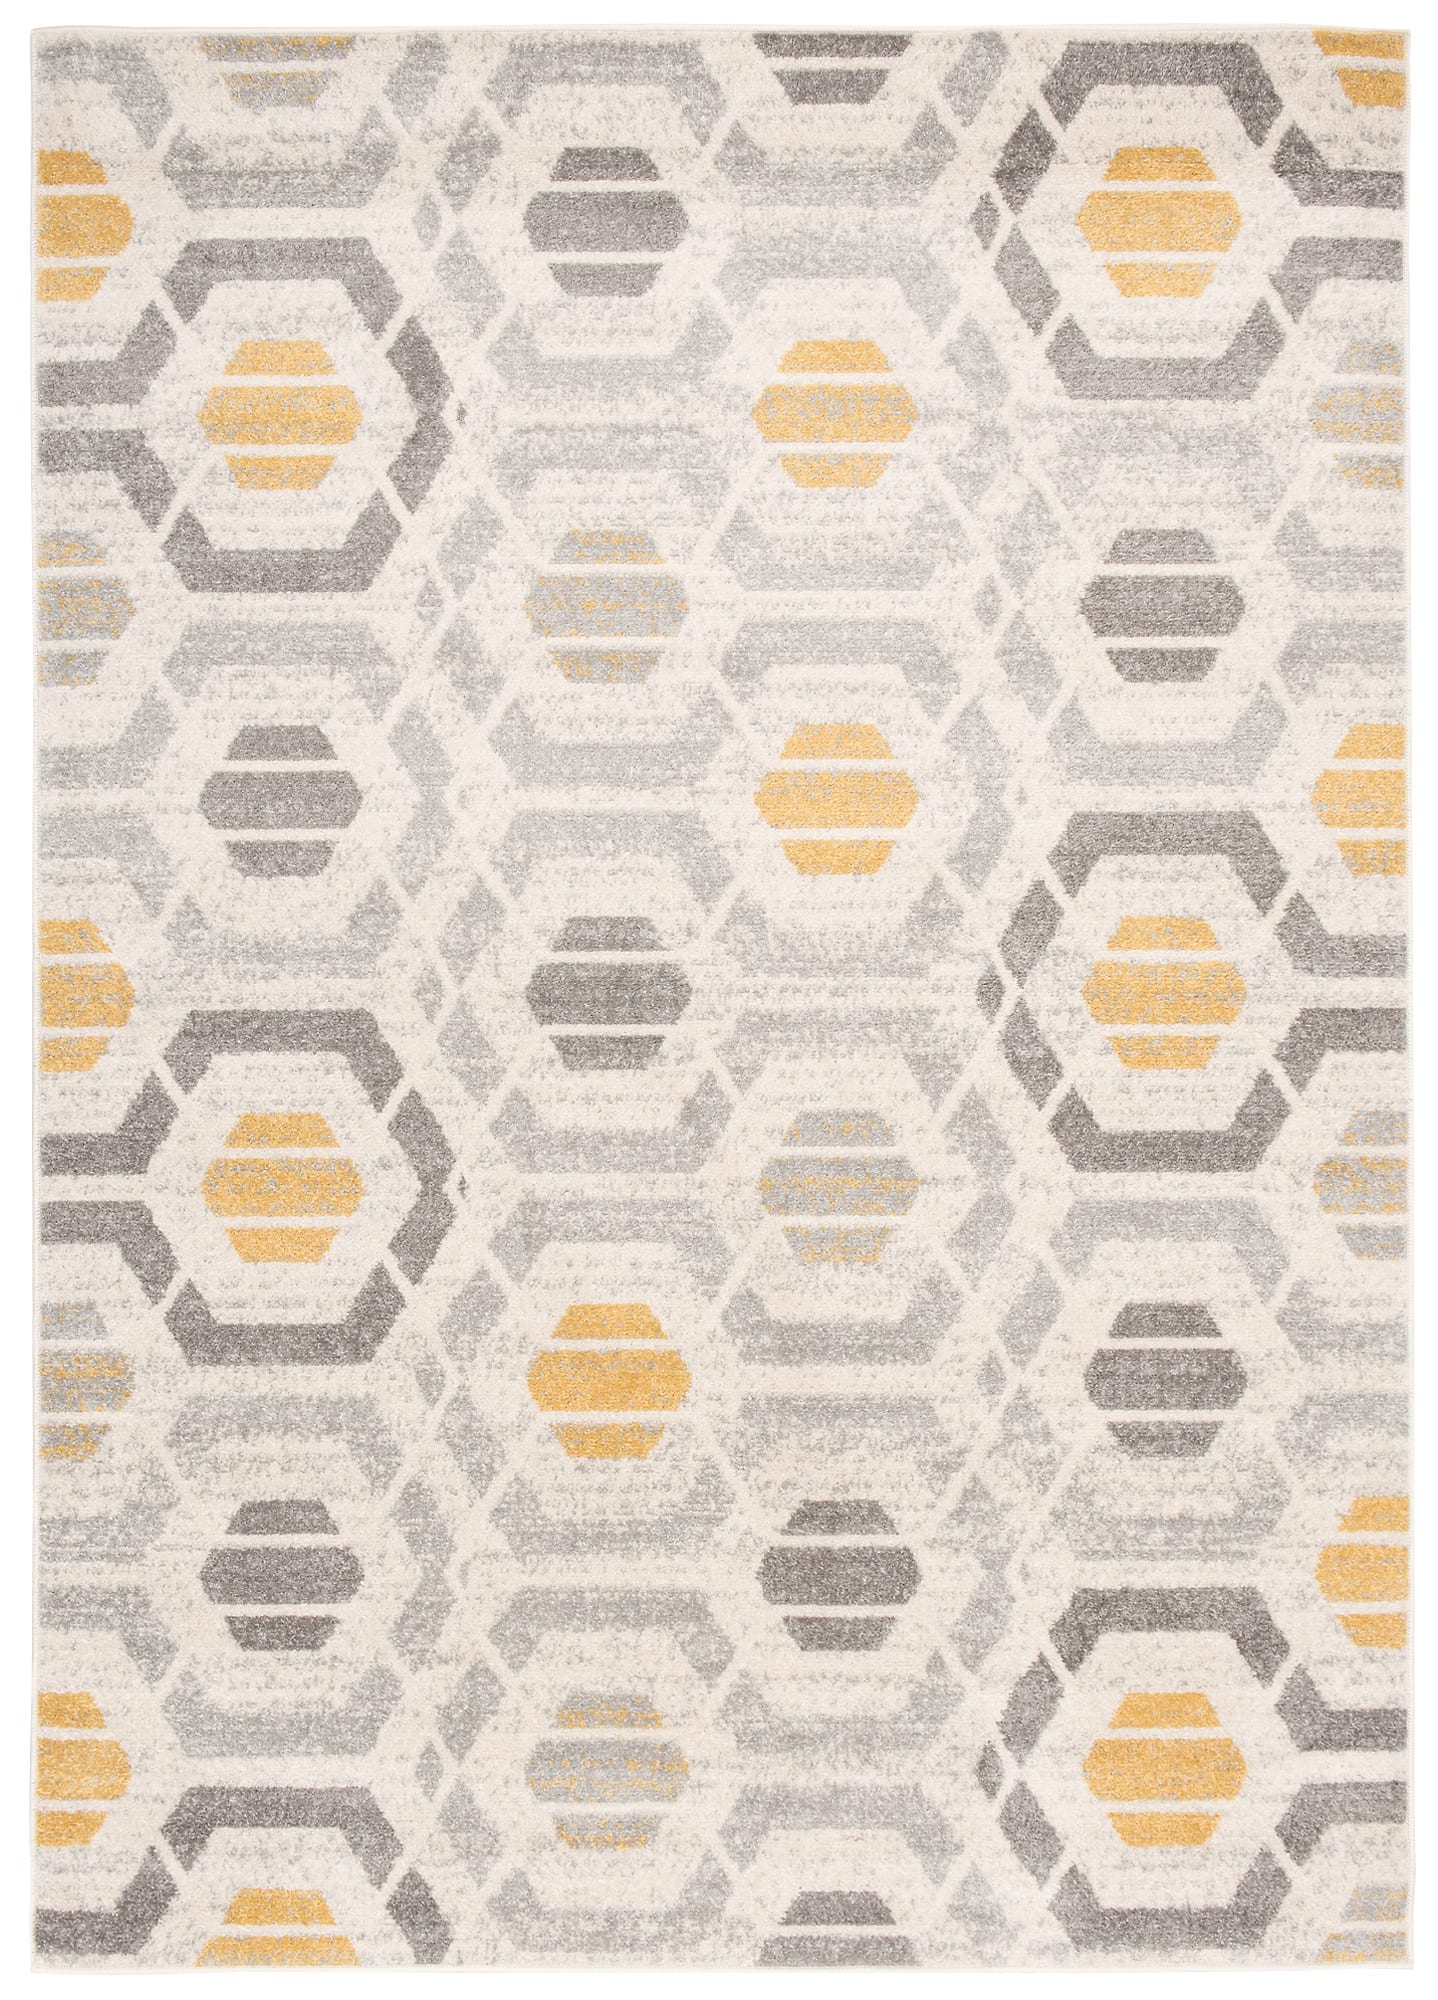 Tzvpsu Alfombra Adornos Salon alfombras Alfombra salón diseño línea  geométrica Gris Amarillo alfombras Salon Alfombra Decoracion Modernos  140x200cm